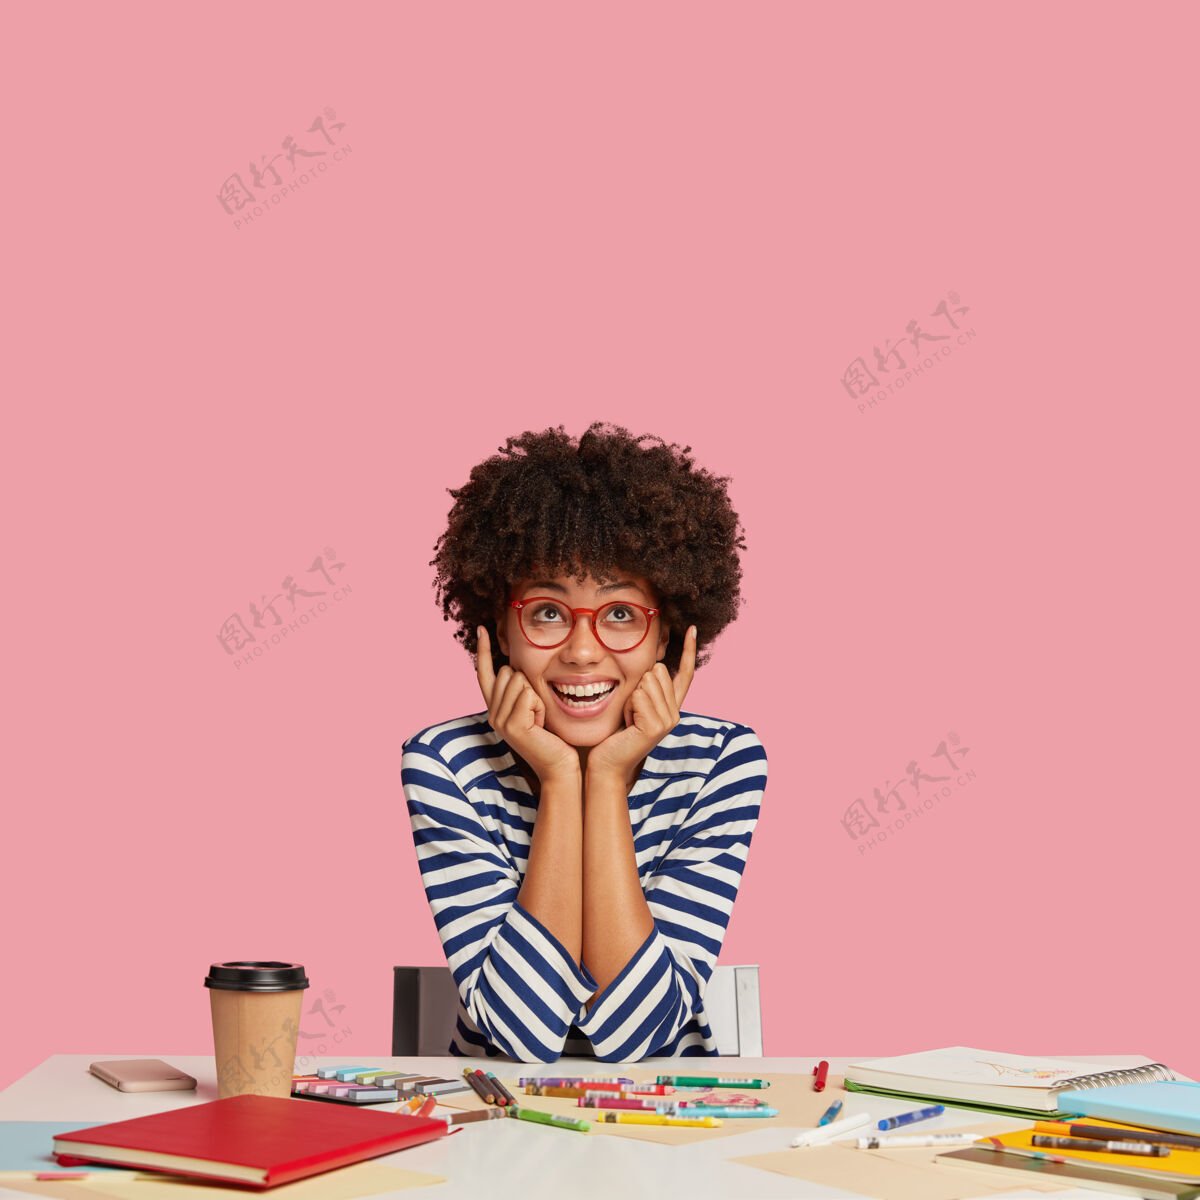 室内这是一张照片 照片拍摄的是一个有创意的年轻人 他留着非洲式发型 食指朝上 微笑着 看到了一些令人敬畏的东西 手掌放在脸颊上室内图片日记桌子记事本